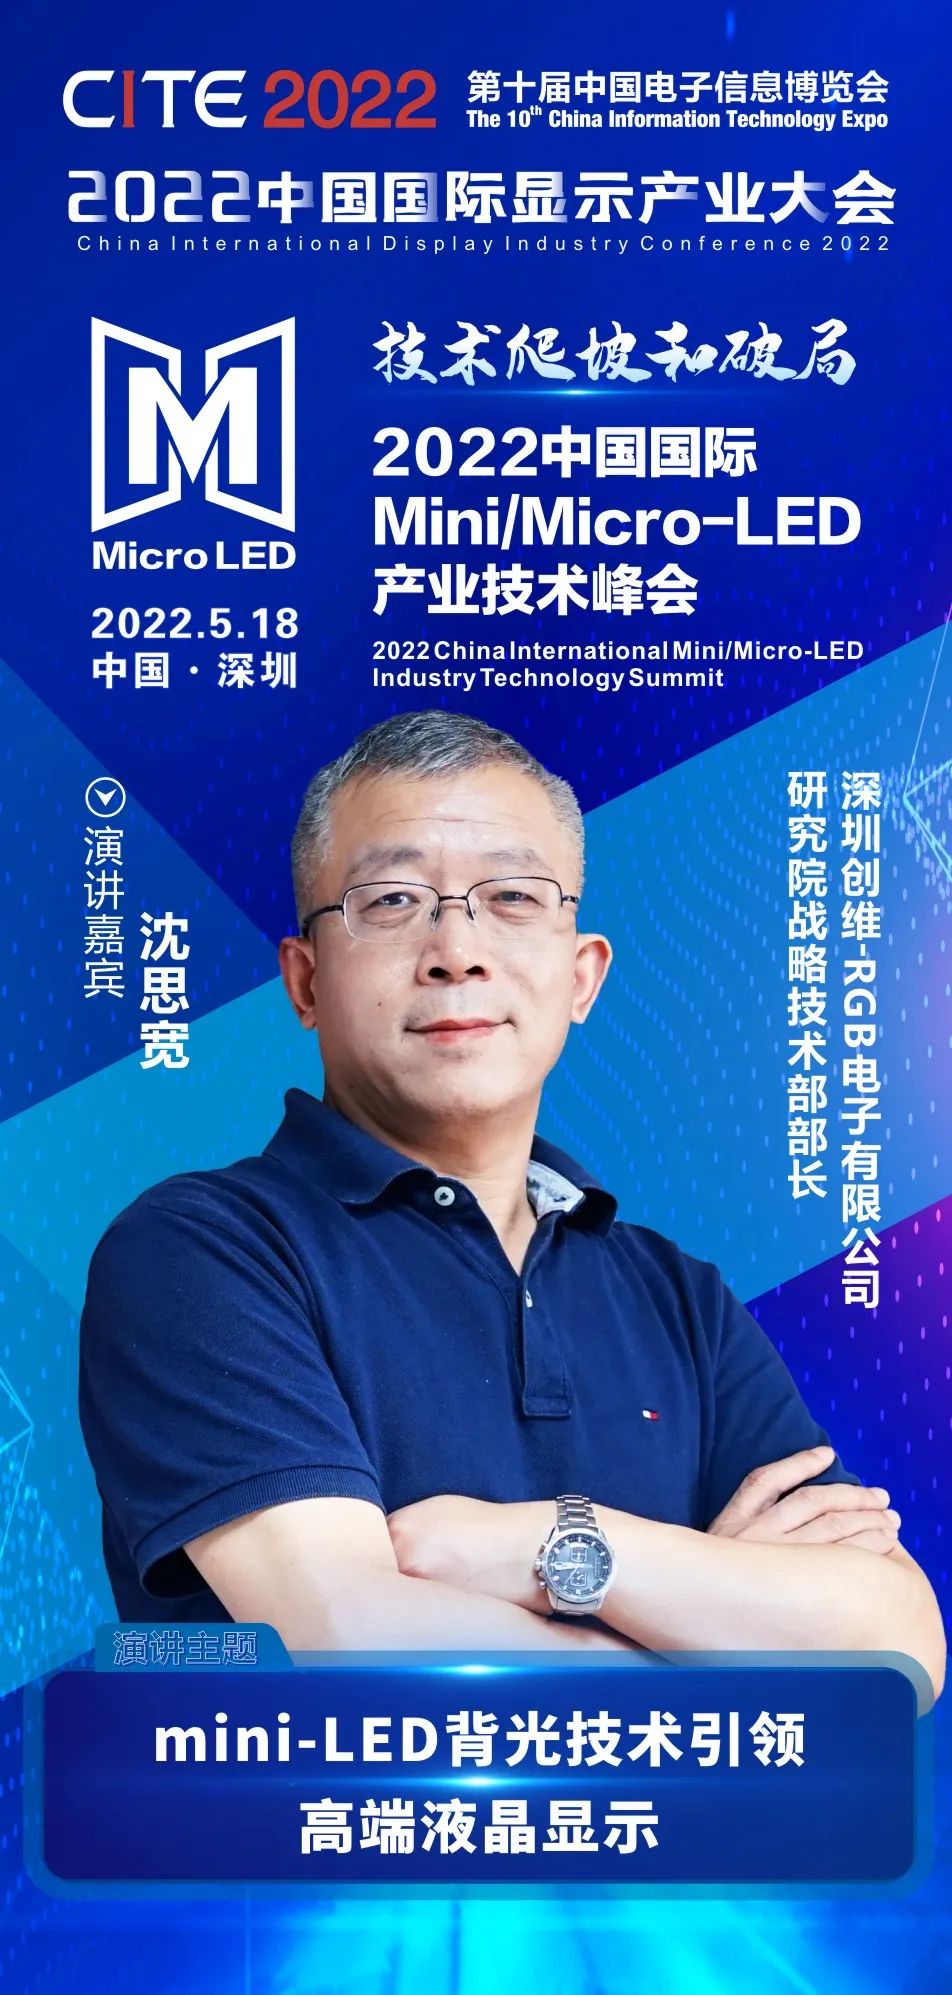 技术爬坡和破局 | 创维-RGB研究院战略技术部部长沈思宽确认出席2022中国国际Mini/Micro-LED产业技术峰会